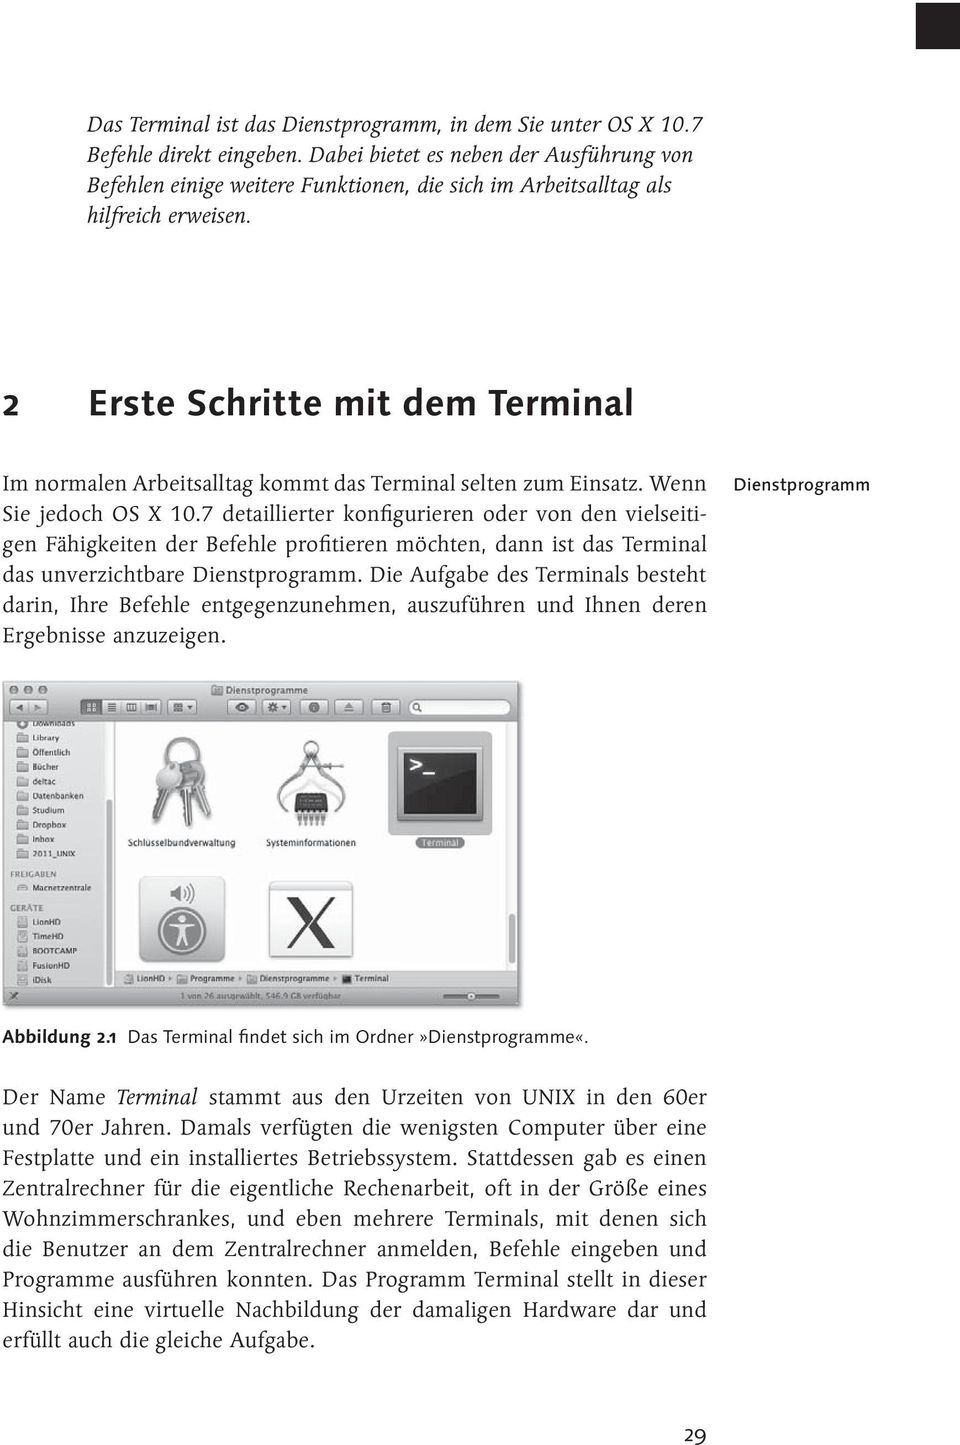 2 Erste Schritte mit dem Terminal Im normalen Arbeitsalltag kommt das Terminal selten zum Einsatz. Wenn Sie jedoch OS X 10.